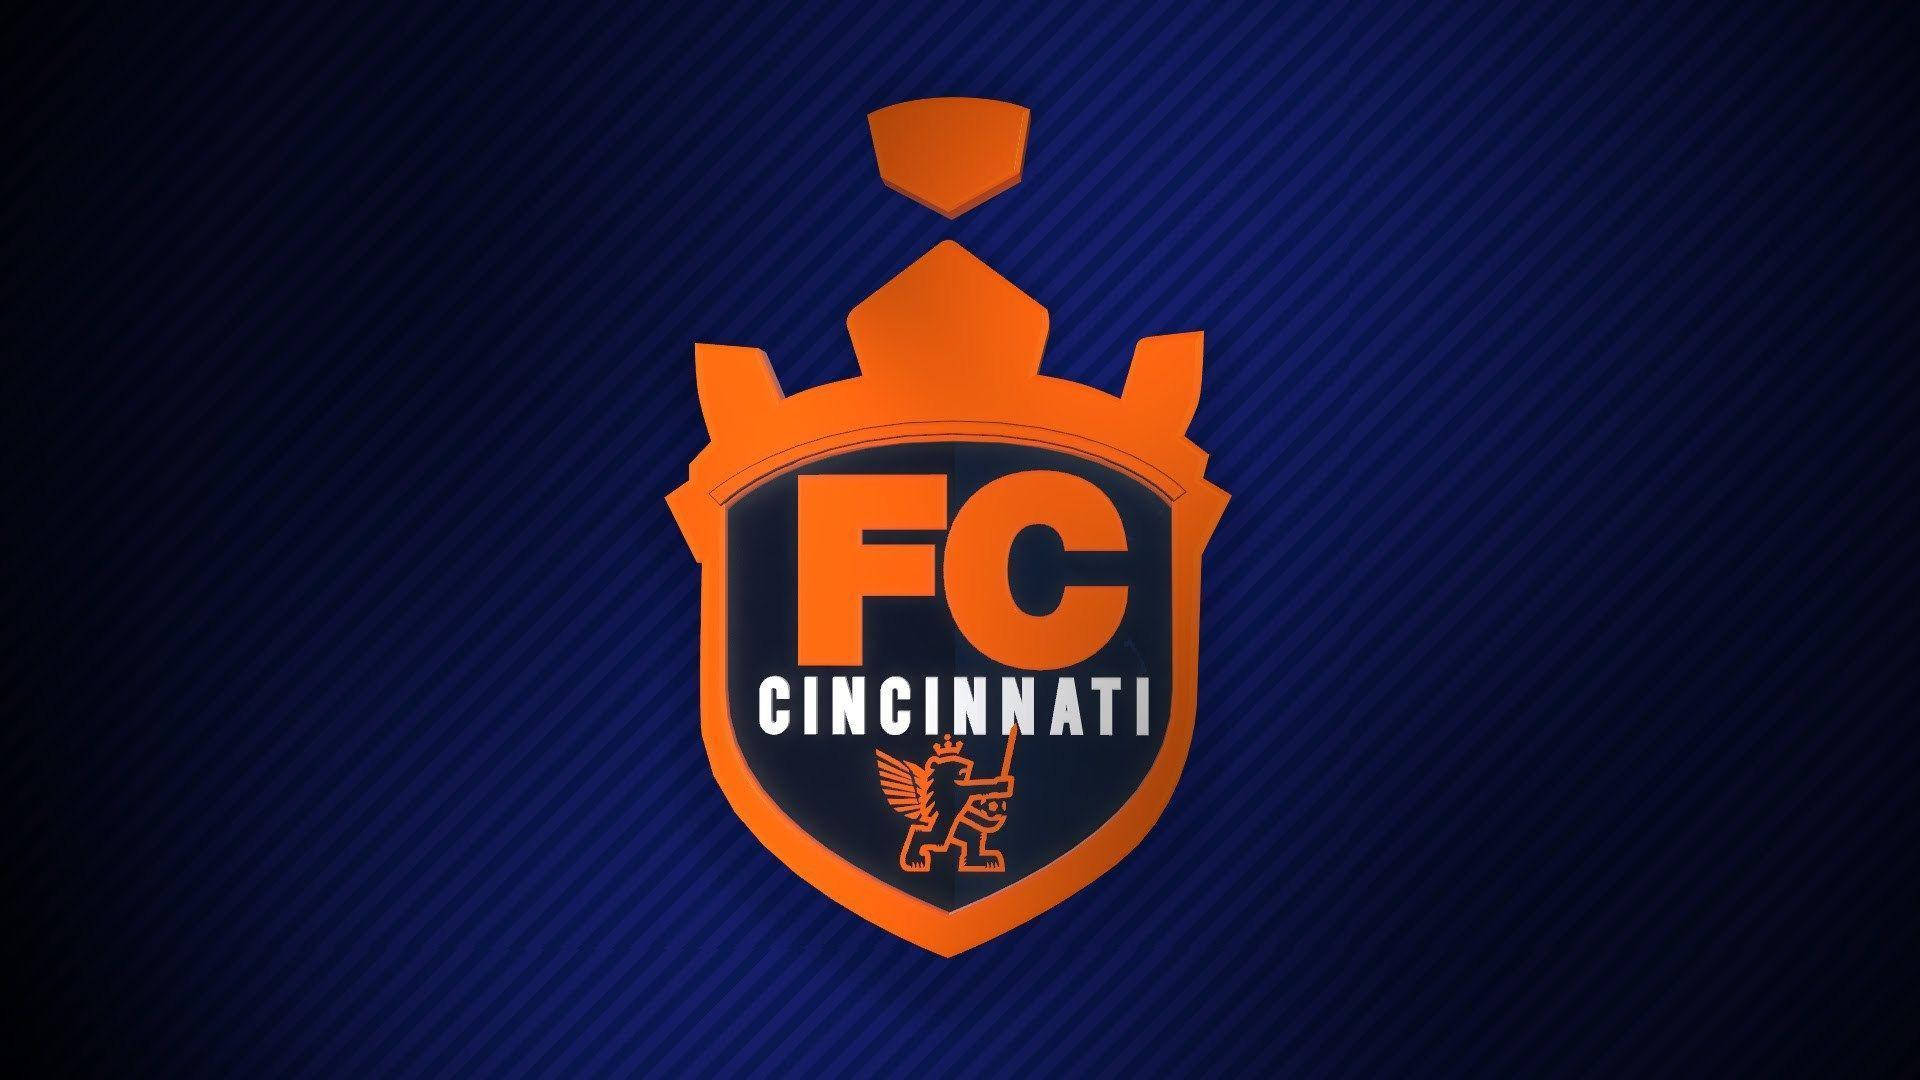 Det gamle logo af FC Cincinnati Wallpaper